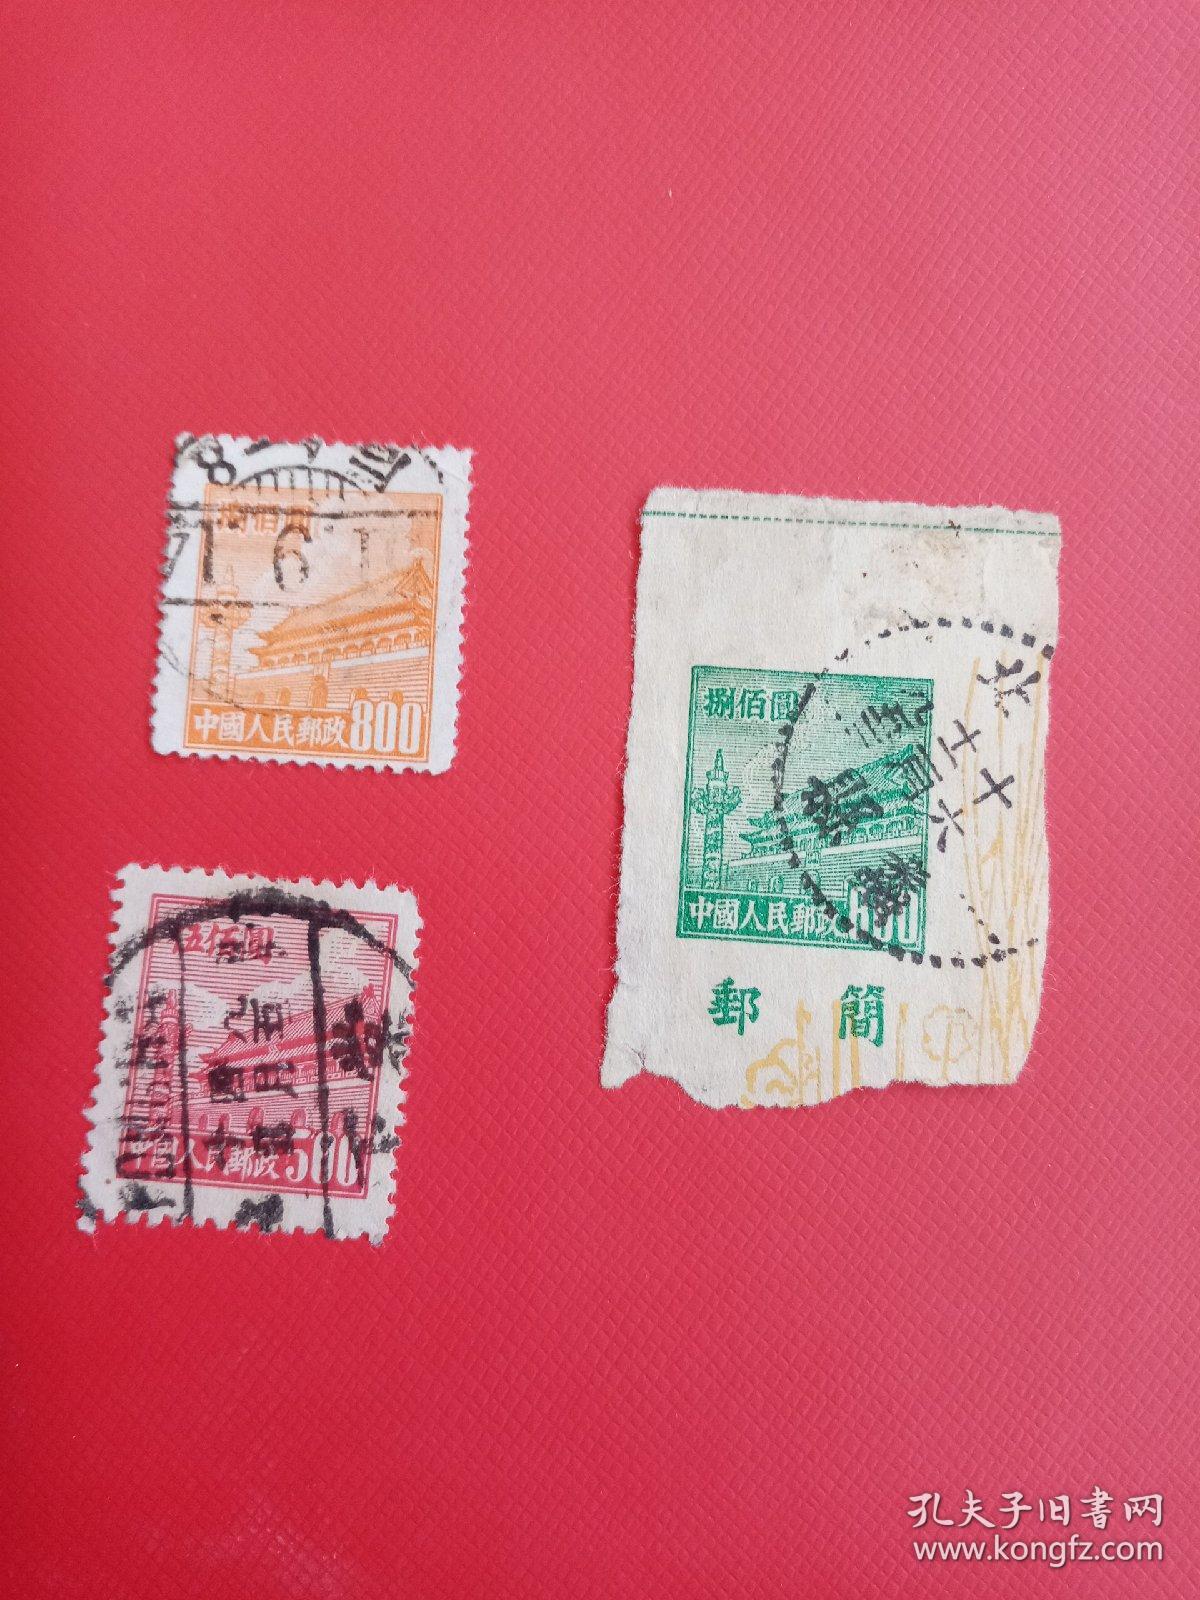 中国人民邮政捌佰圆邮票两枚伍佰圆邮票一枚。